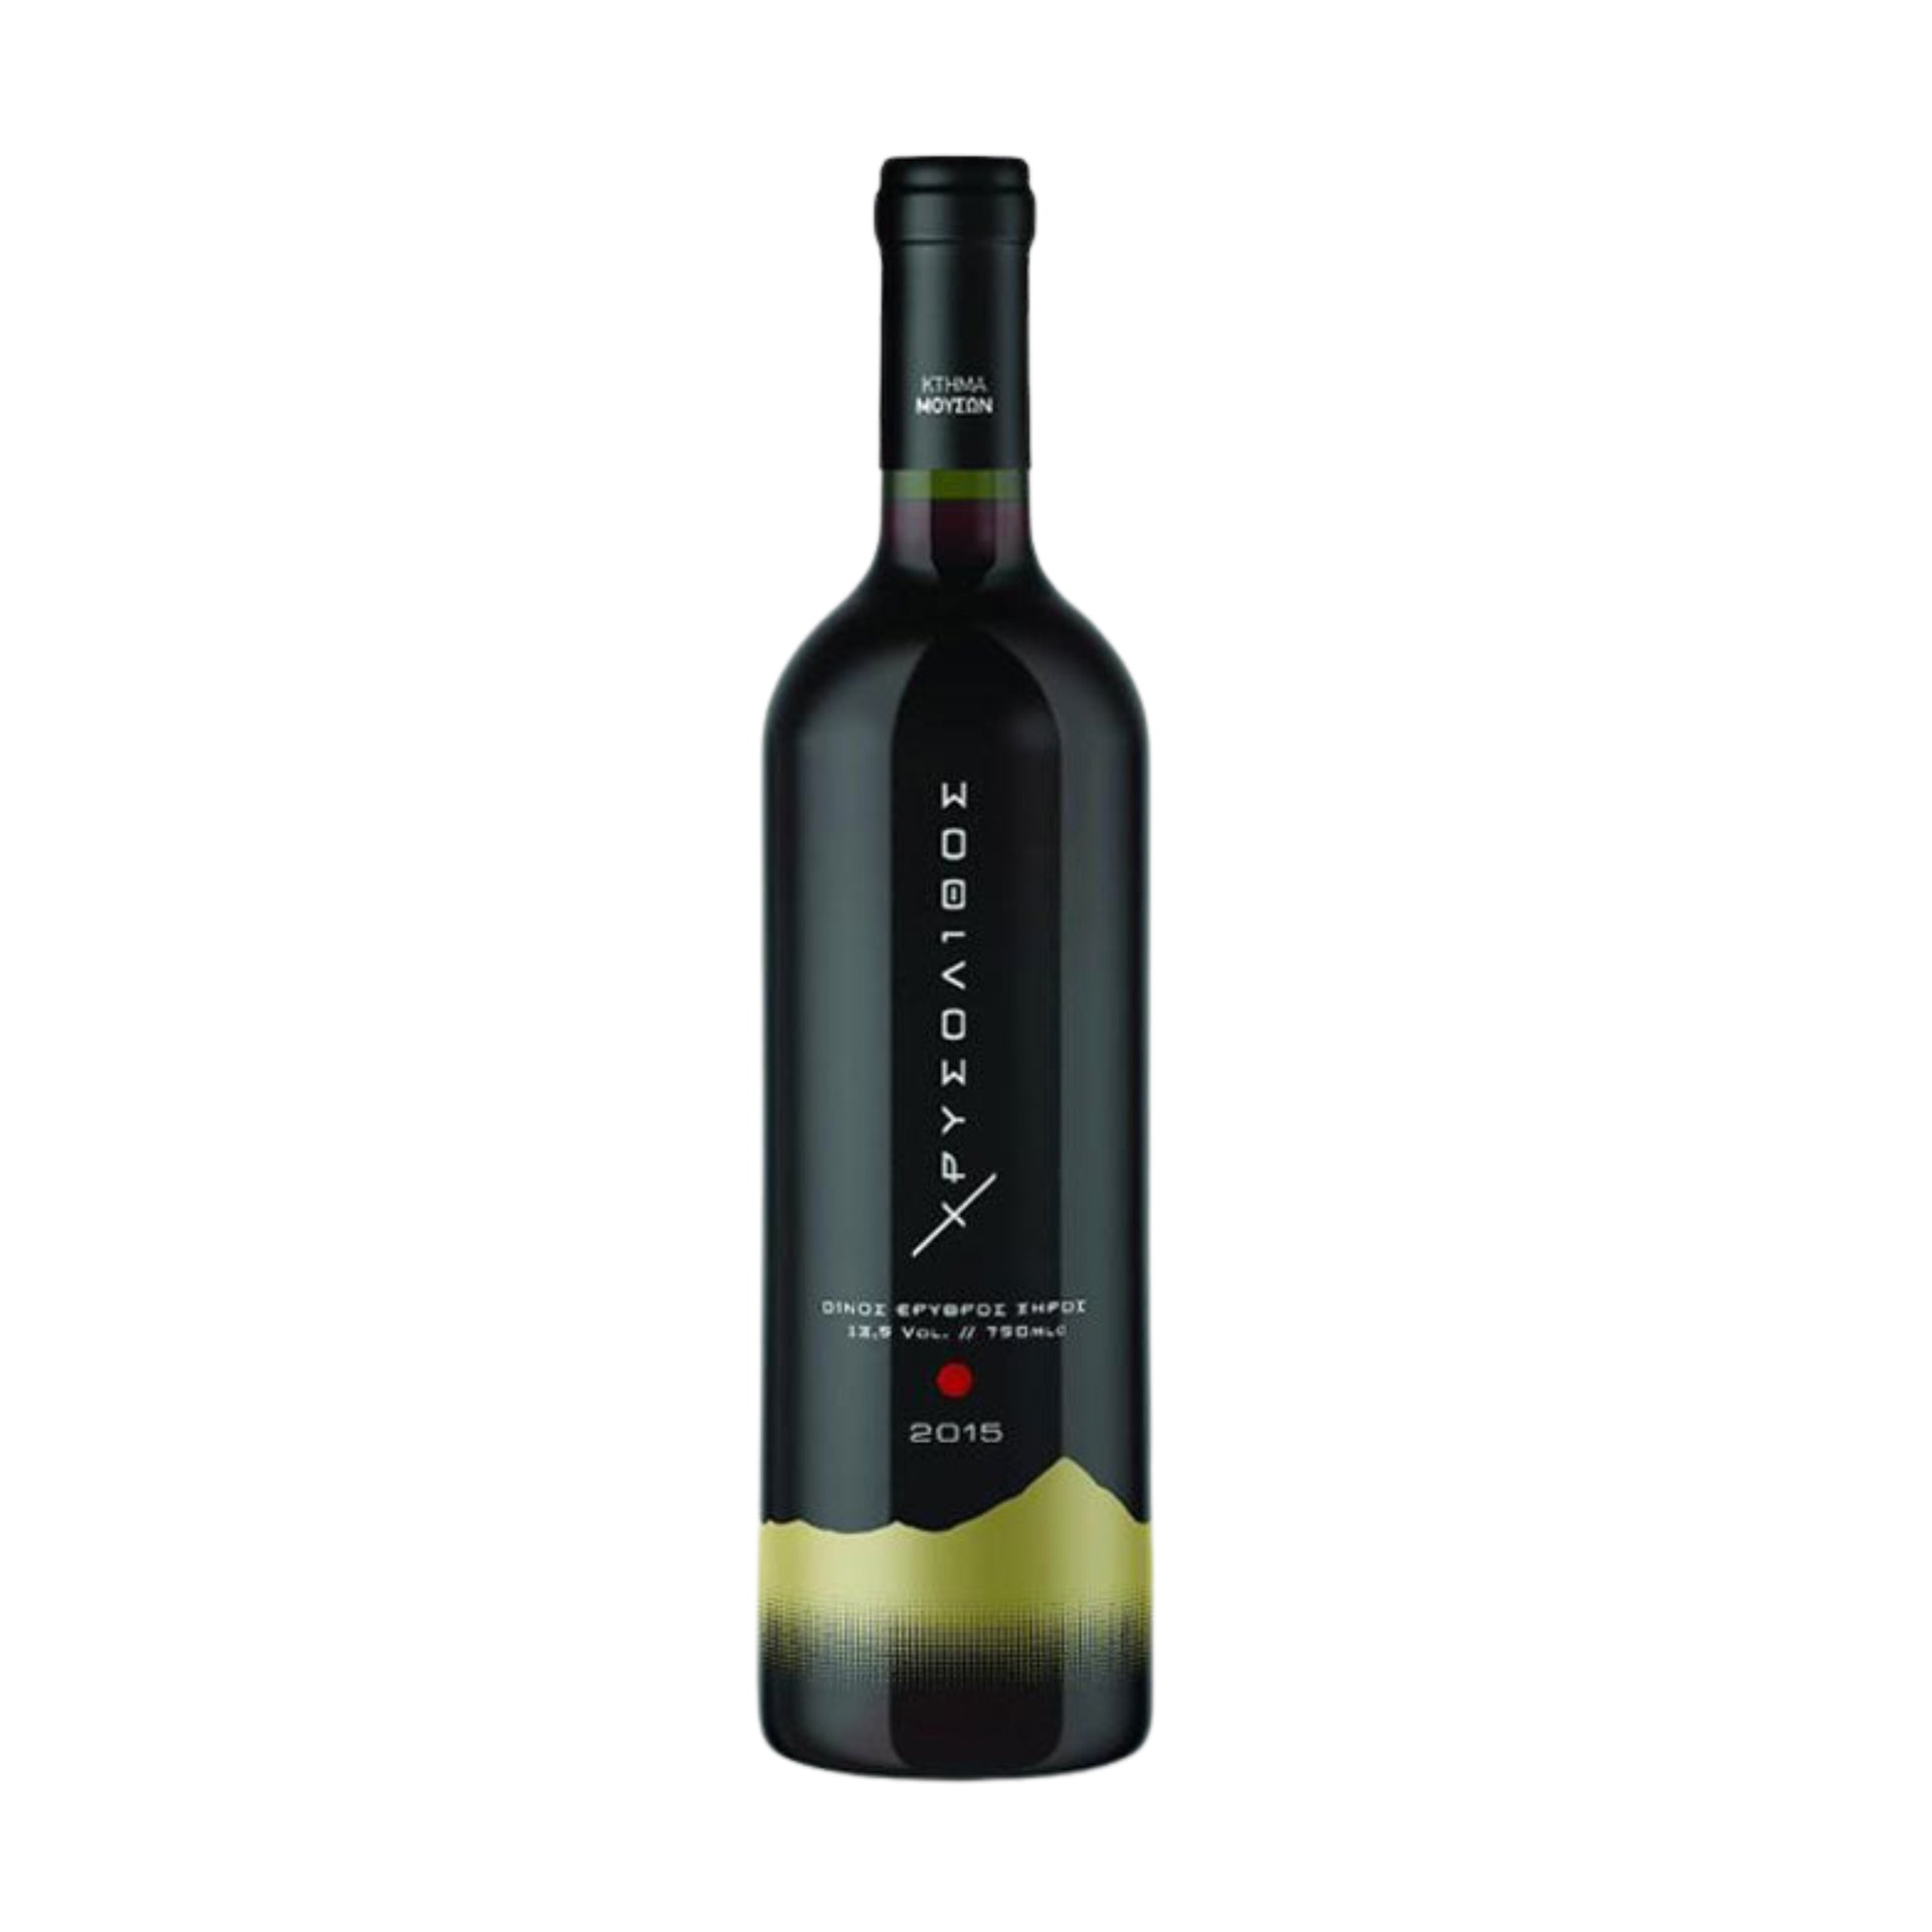 prodotti-greci-vino-chrisolithos-rosso-750ml-muses-estate